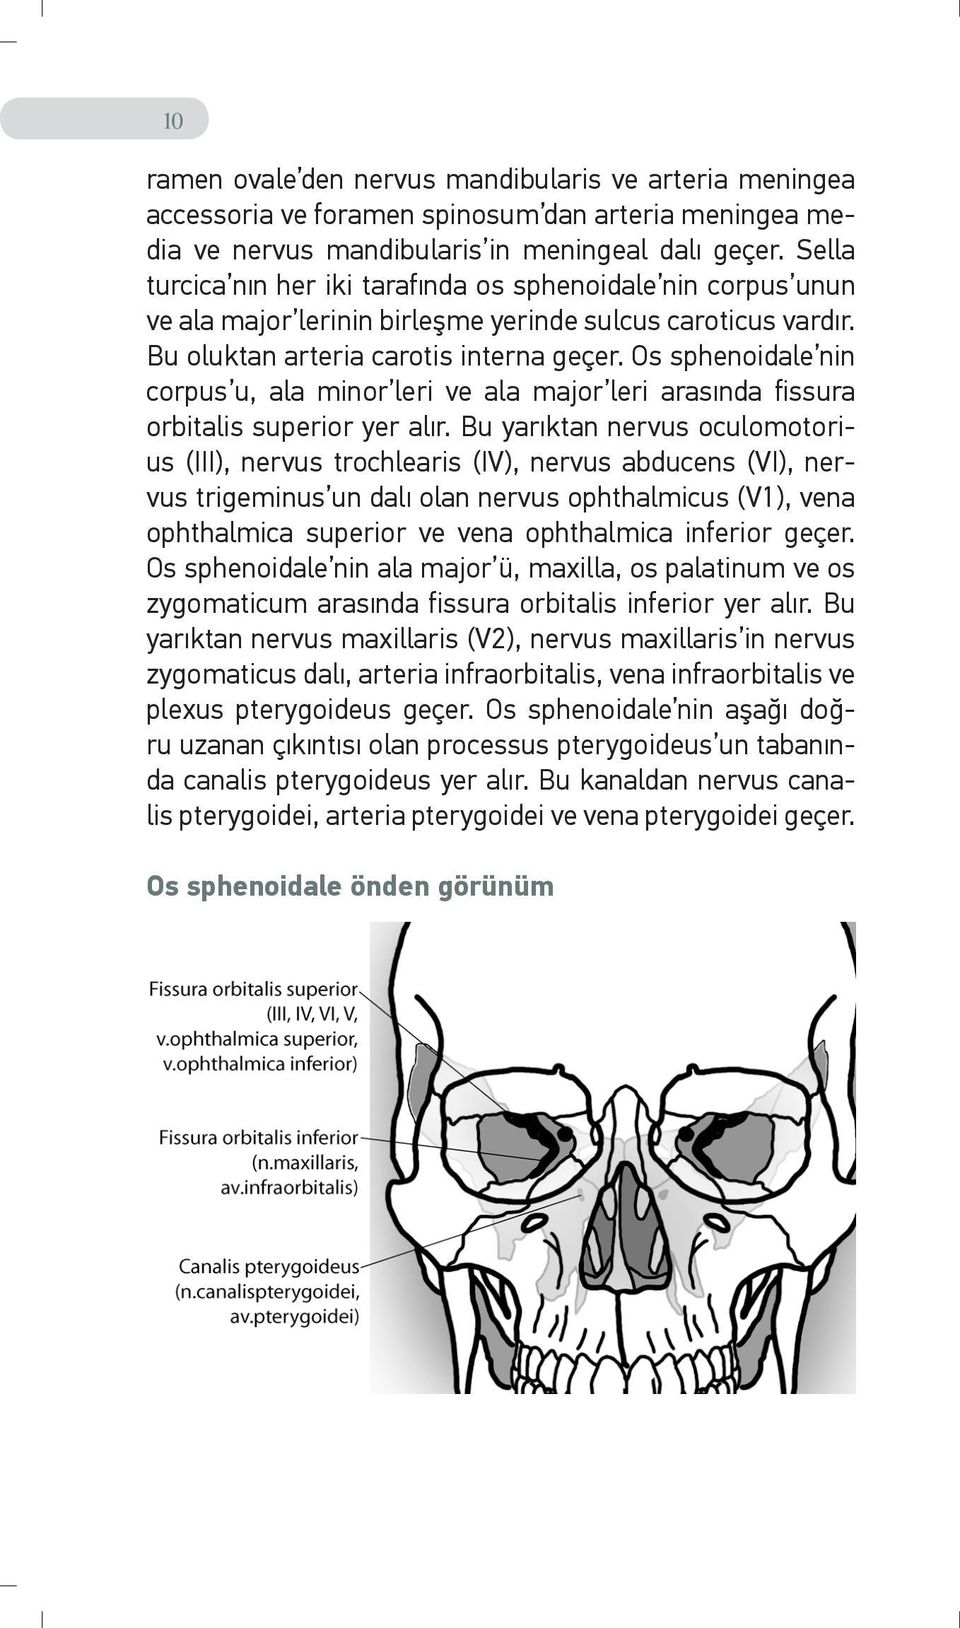 Os sphenoidale nin corpus u, ala minor leri ve ala major leri arasında fissura orbitalis superior yer alır.